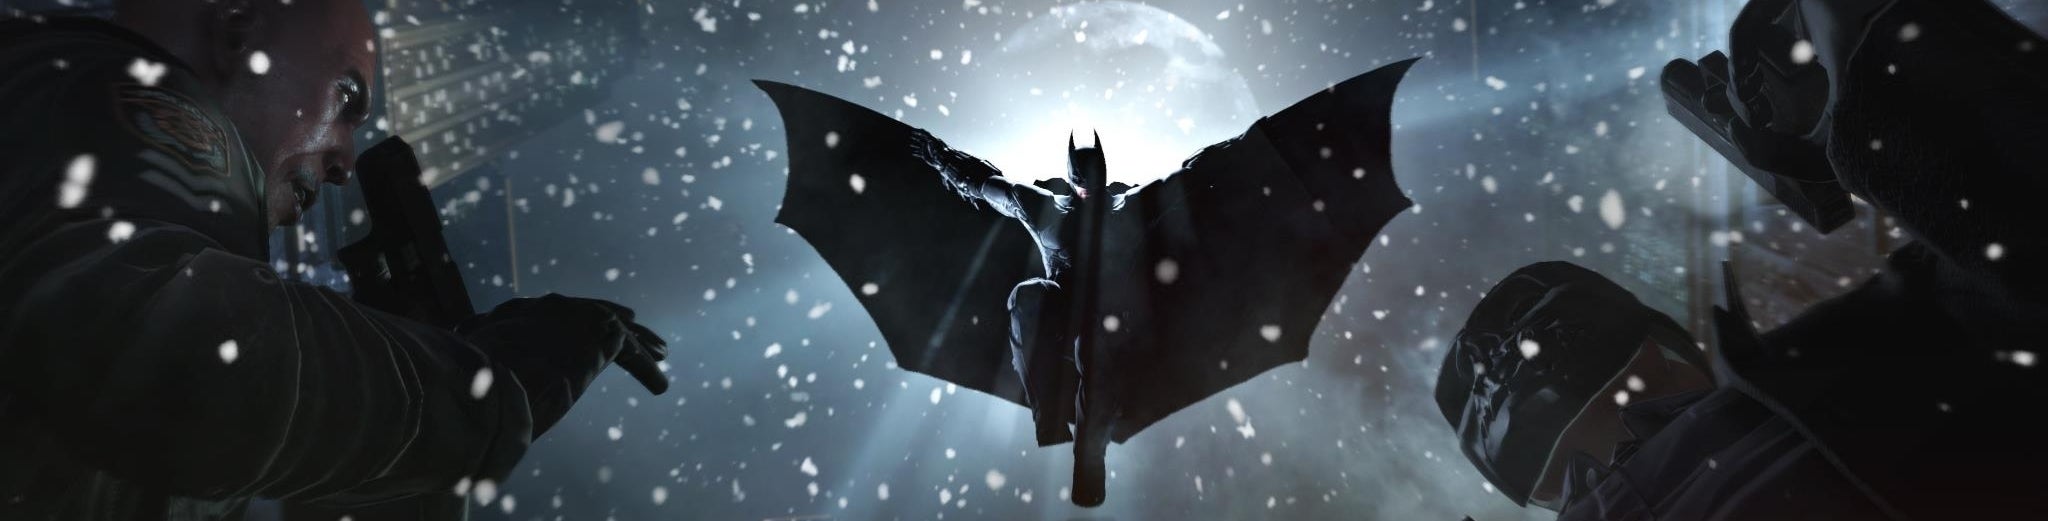 Bilder zu Batman: Arkham Origins - Test